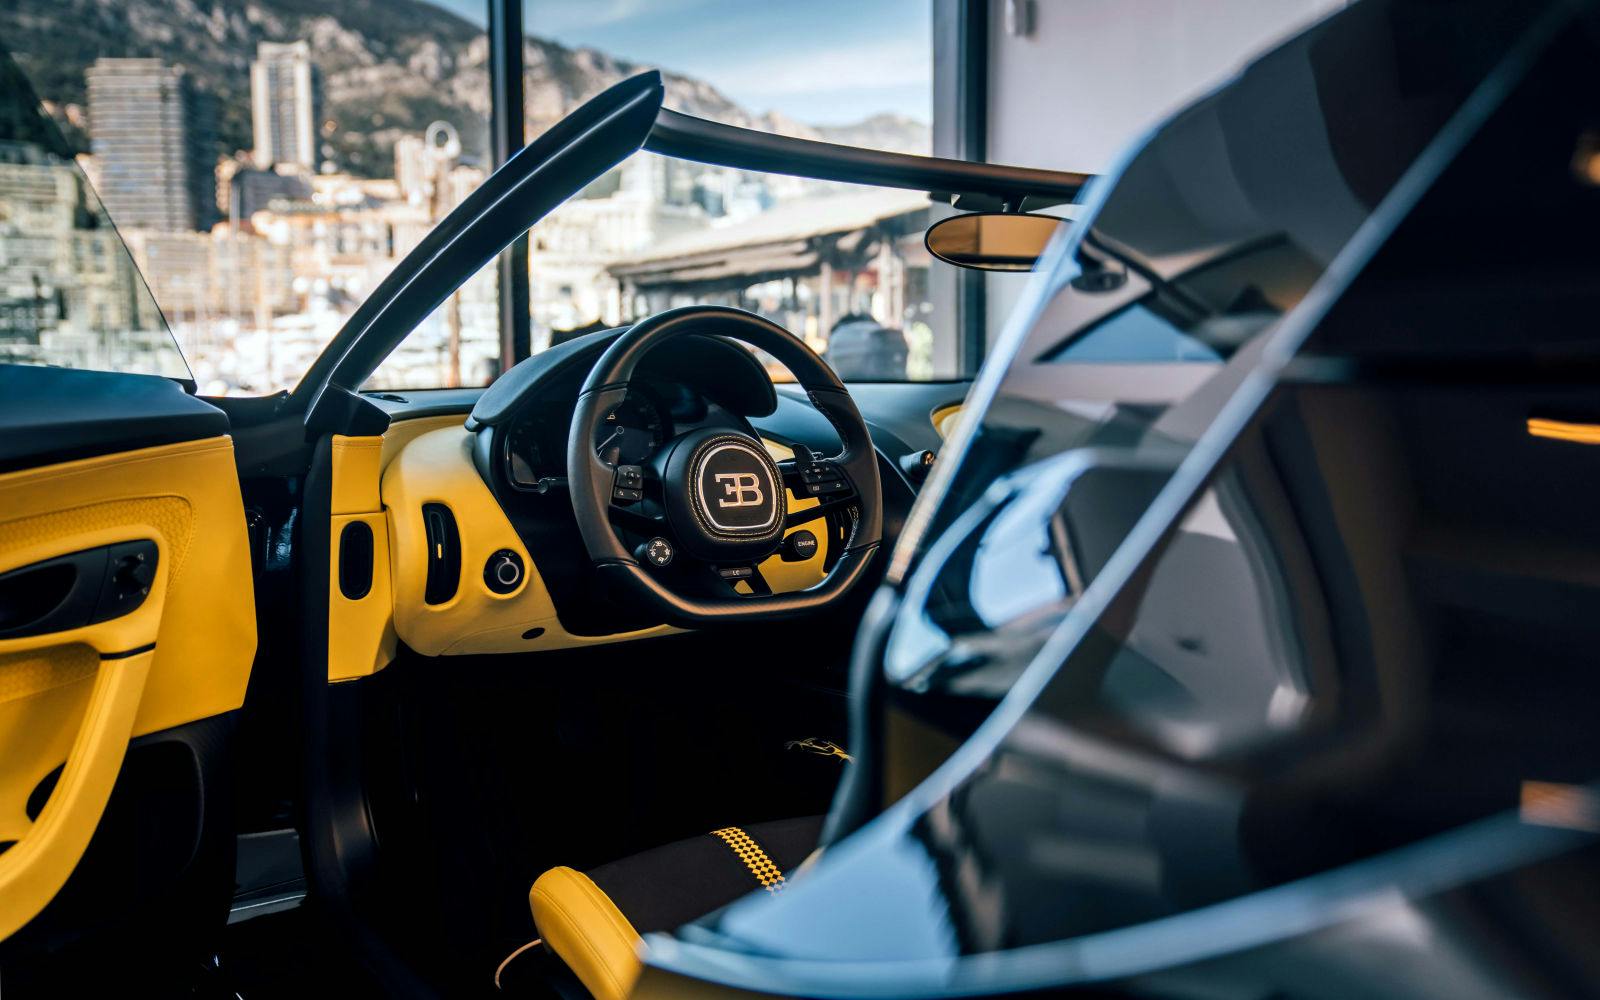 À l’occasion de l’ouverture du nouveau showroom de Monaco, les invités ont pu découvrir en détails la nouvelle W16 Mistral, roadster ultime de Bugatti.
